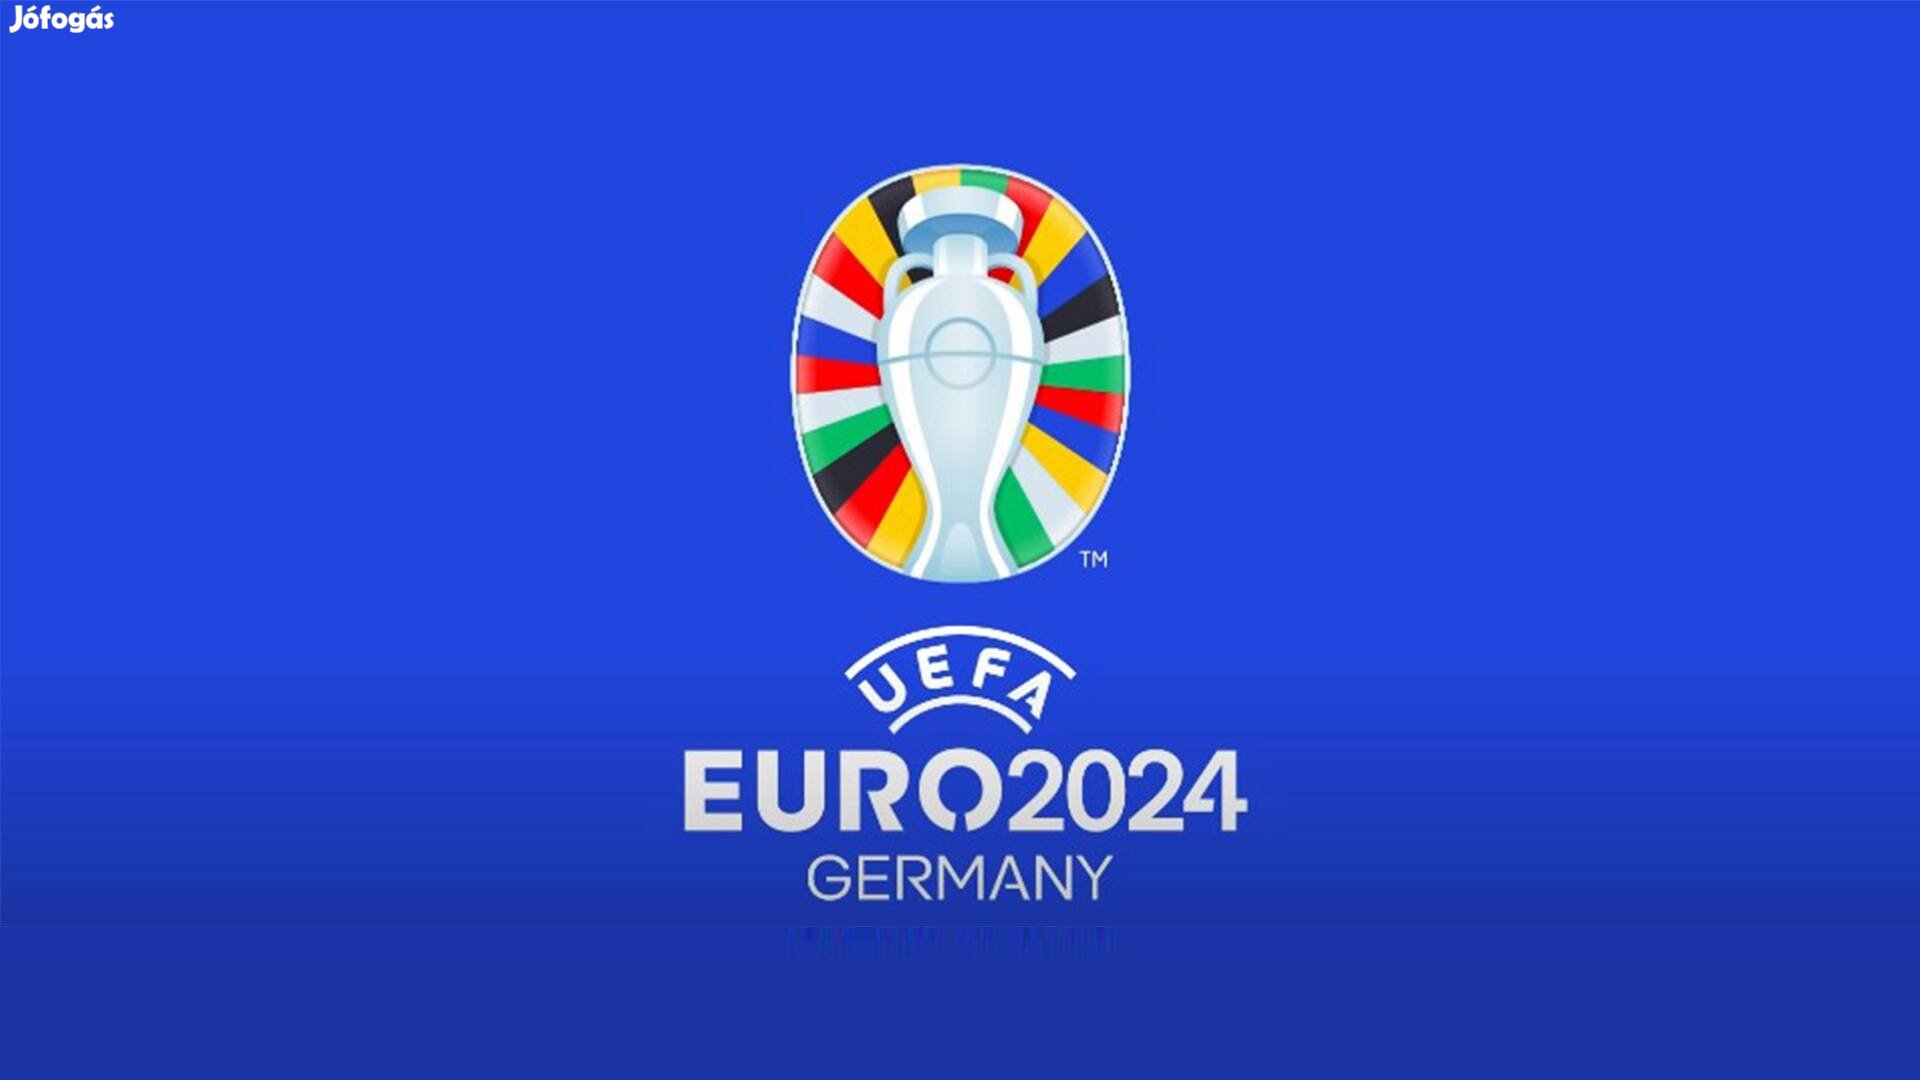 UEFA Euro 2024 